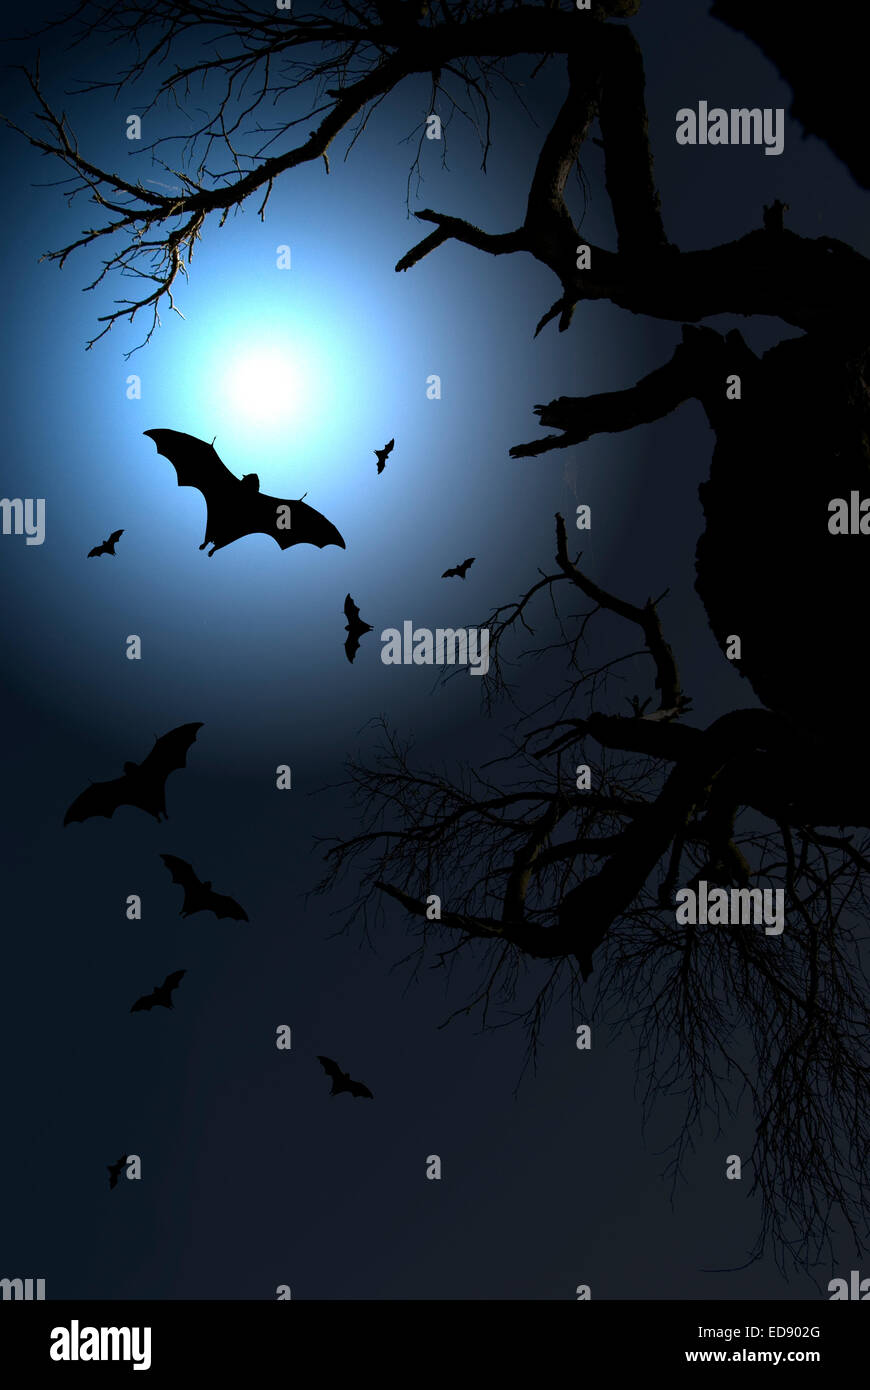 dramatische Nachtszene mit toten Baum und fliegende Fledermäuse in der Silhouette mit einem hellen Licht vom Mond Stockfoto